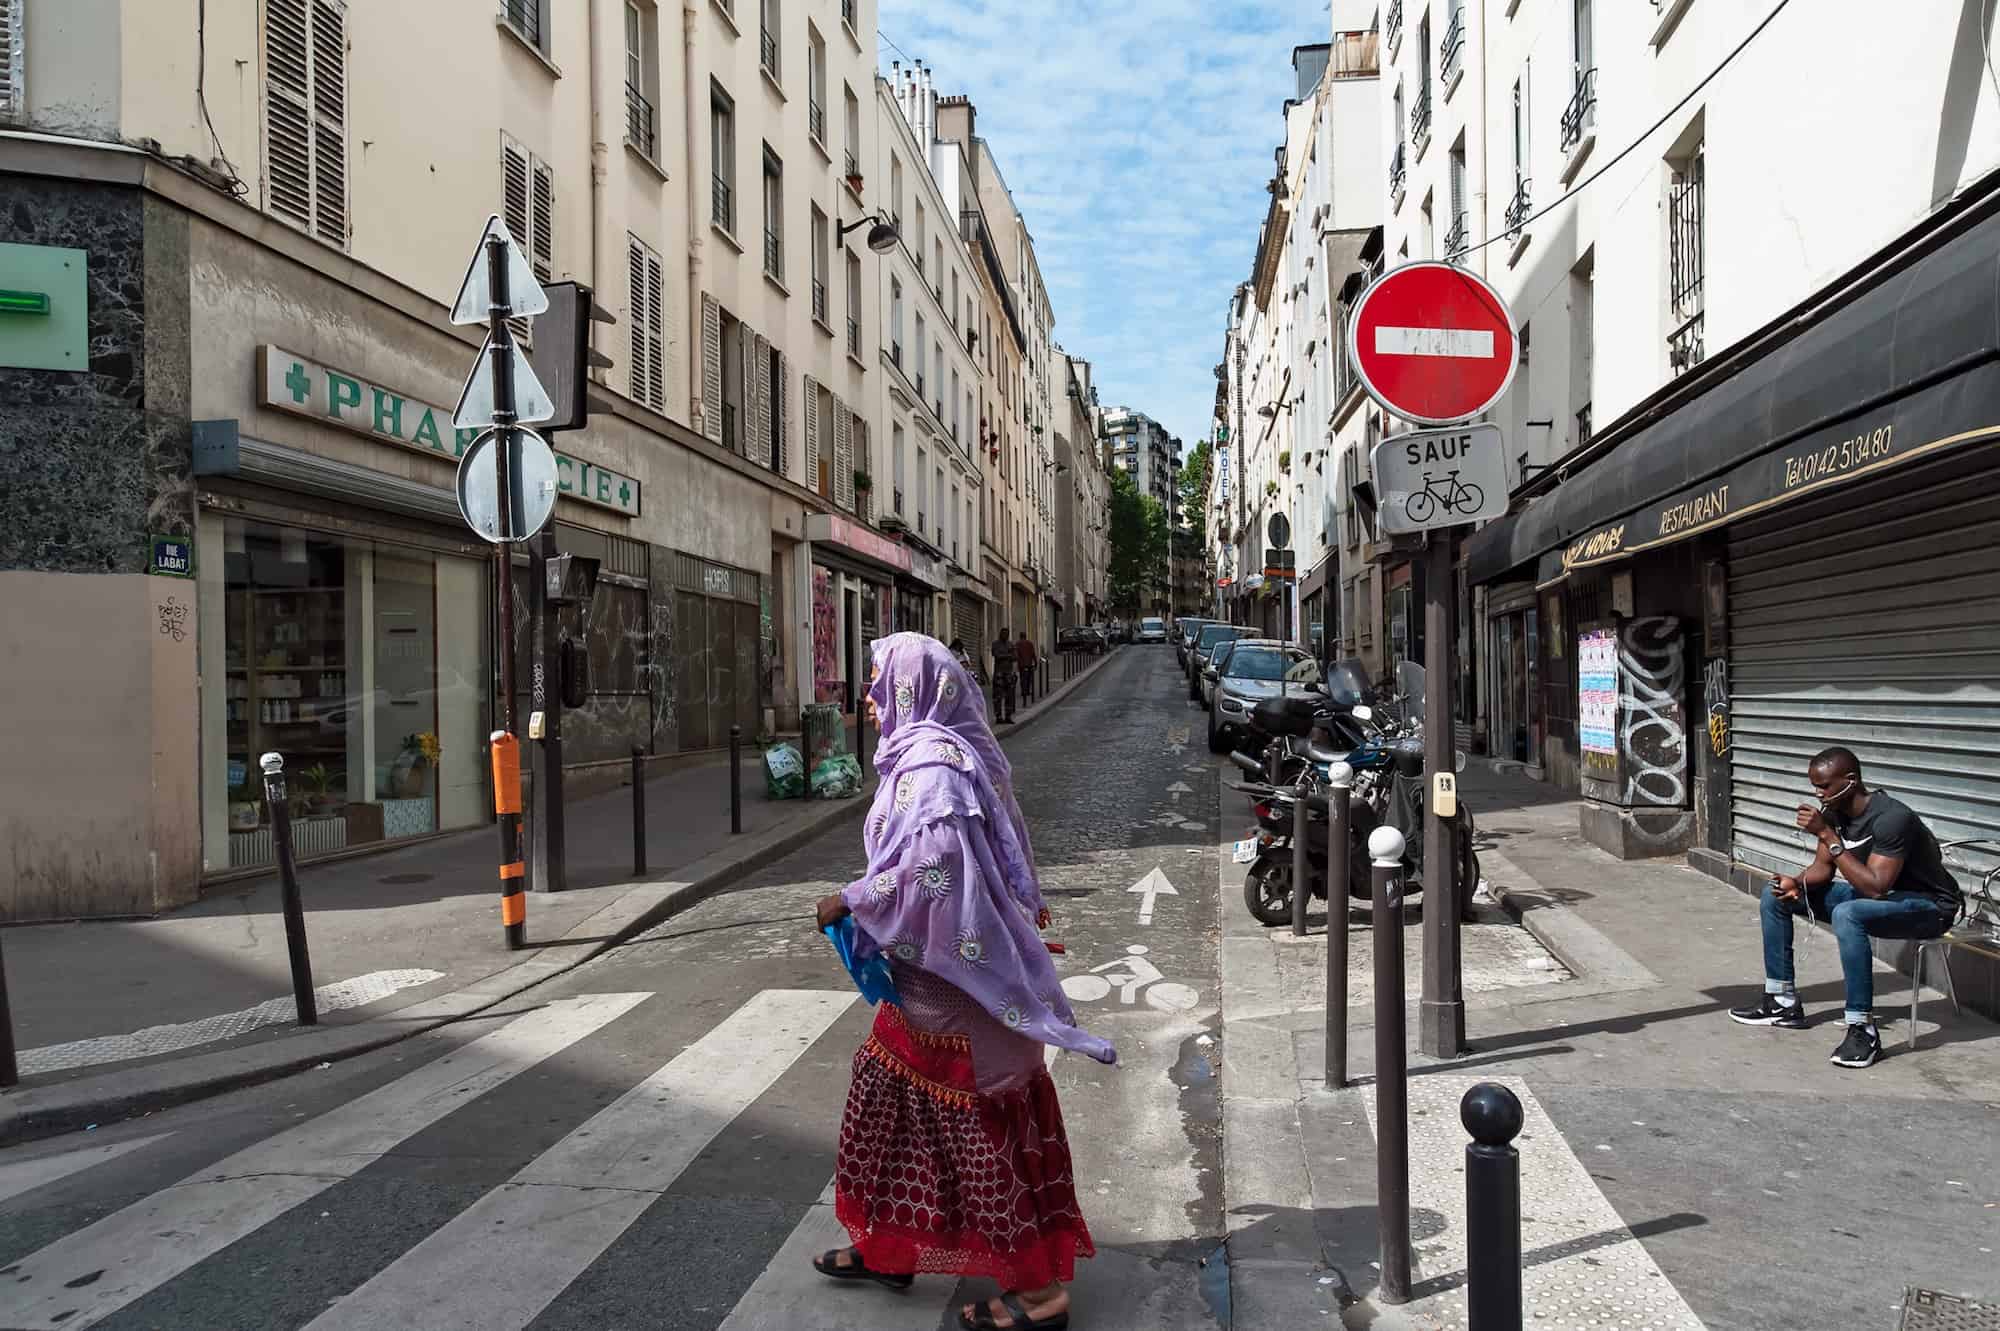 HiP Paris Blog discovers Paris' first cheese dairy La Laiterie de Paris on a quiet street of multicultural Barbès.